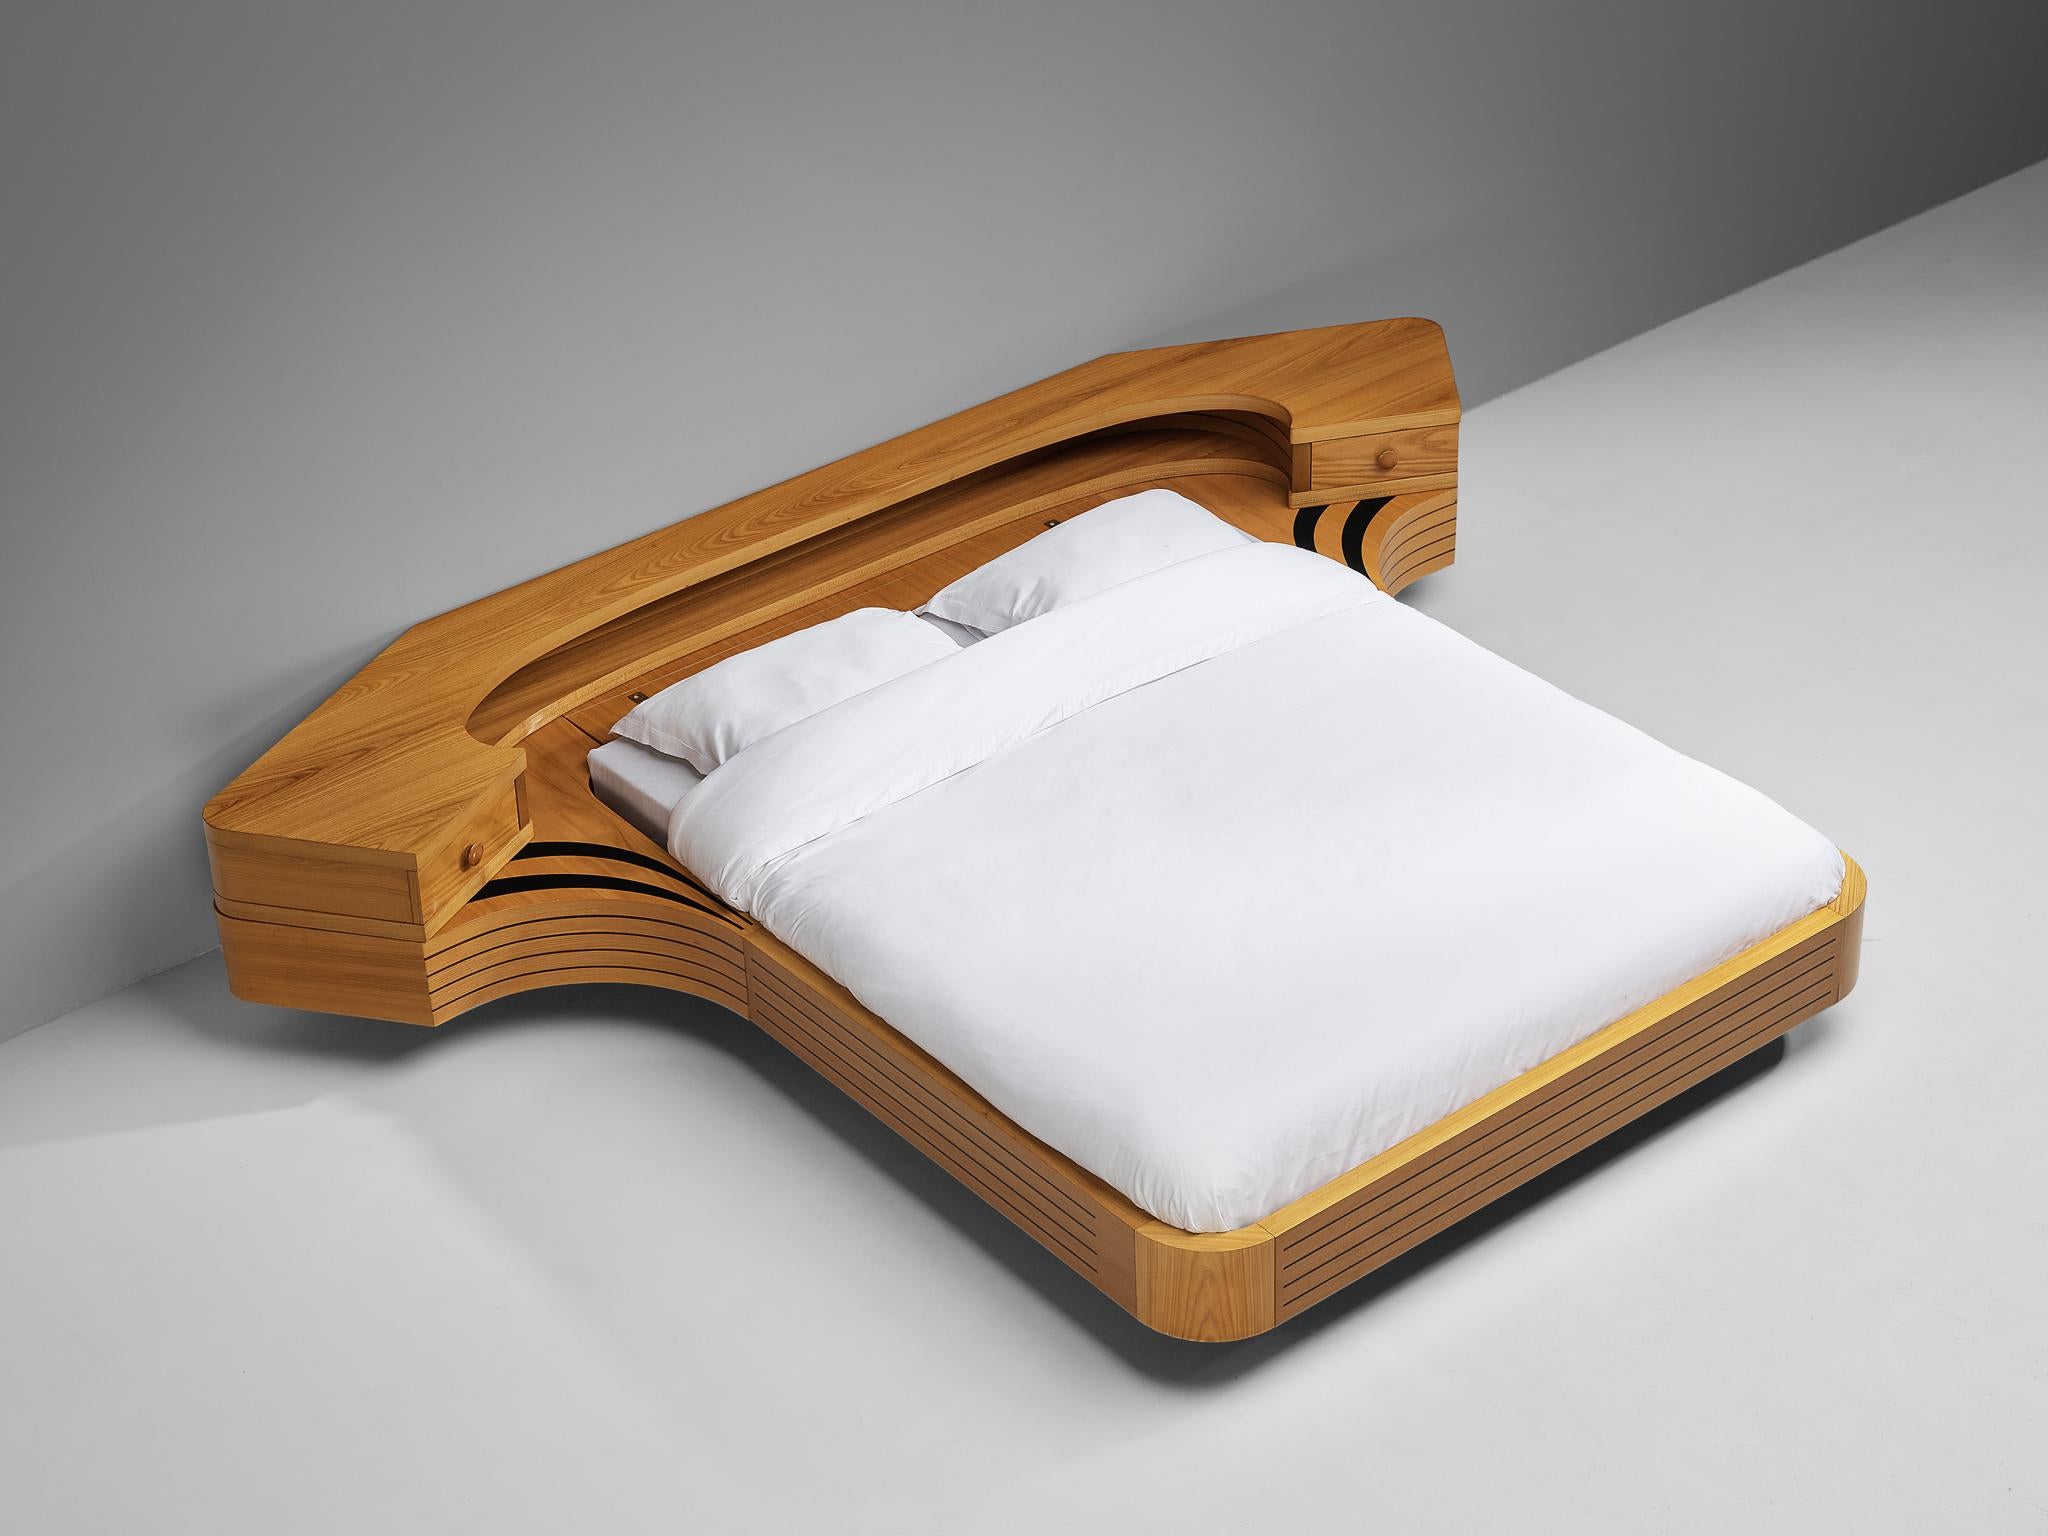 Lit King Size, orme, bois, Italie, années 1970

Un lit double captivant et sculptural, fabriqué en Italie dans les années 1970. Cette pièce est d'une qualité étonnante, non seulement visible dans le design lui-même, mais aussi évidente dans son